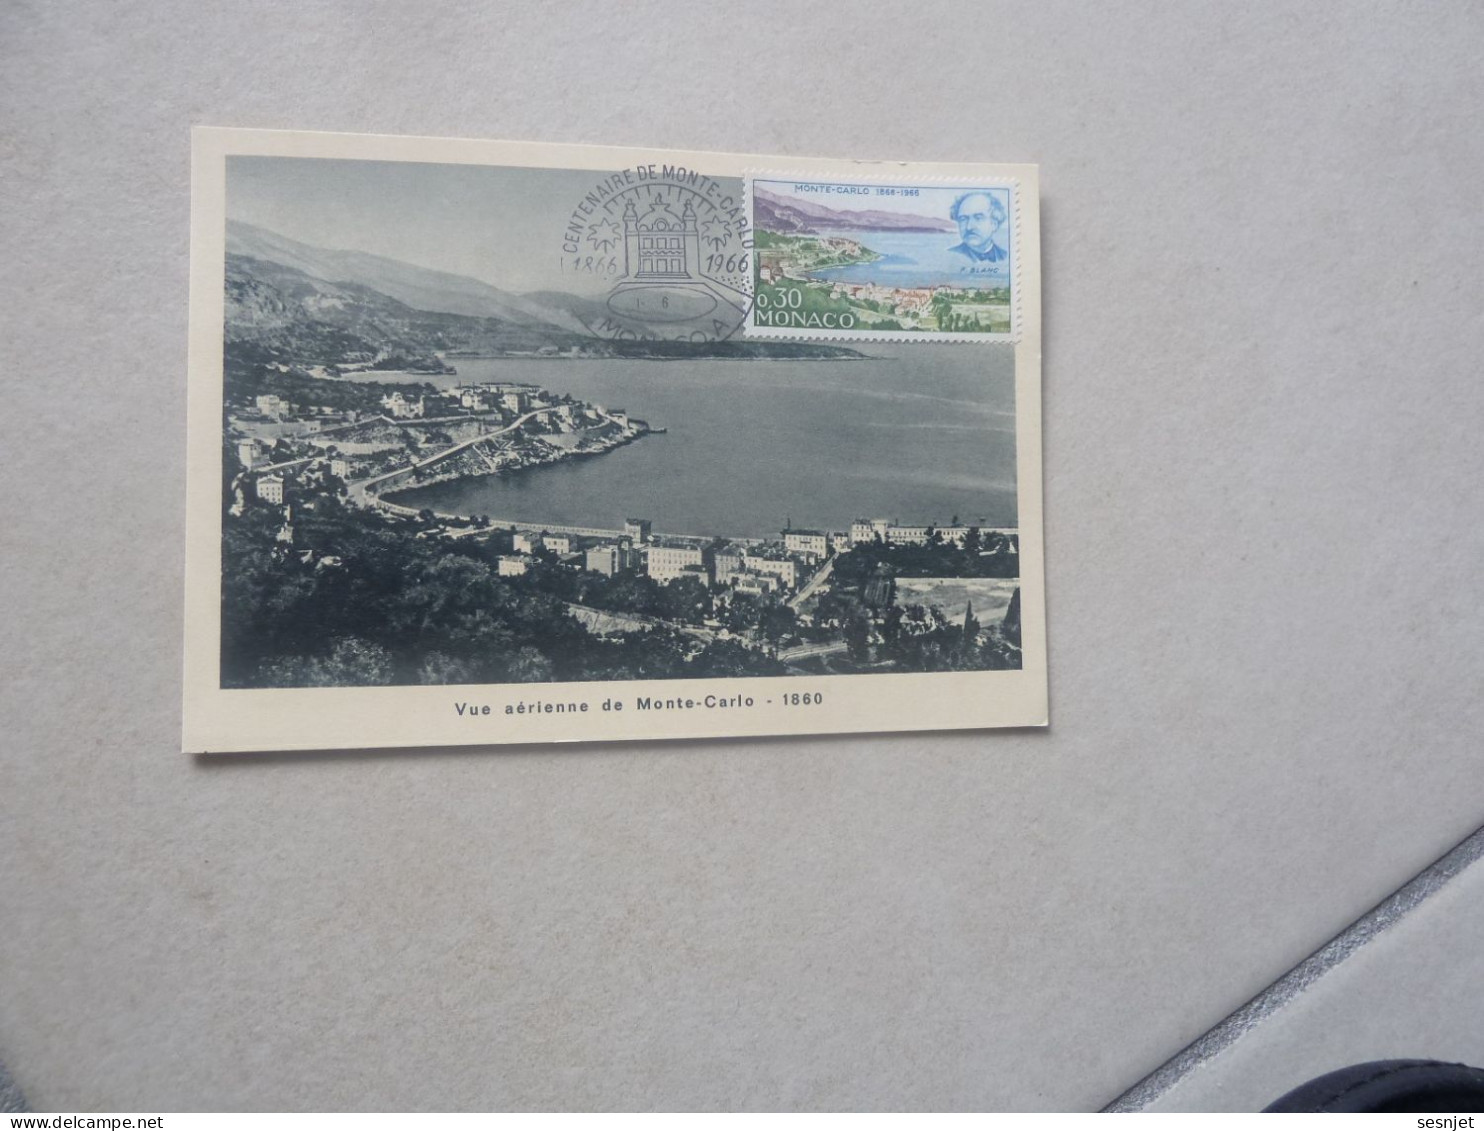 Monaco - Vue Aérienne De Monte-Carlo (1860) - 0f.30 - Yt 697 - Carte Premier Jour D'Emission - Année 1966 - - Cartas Máxima